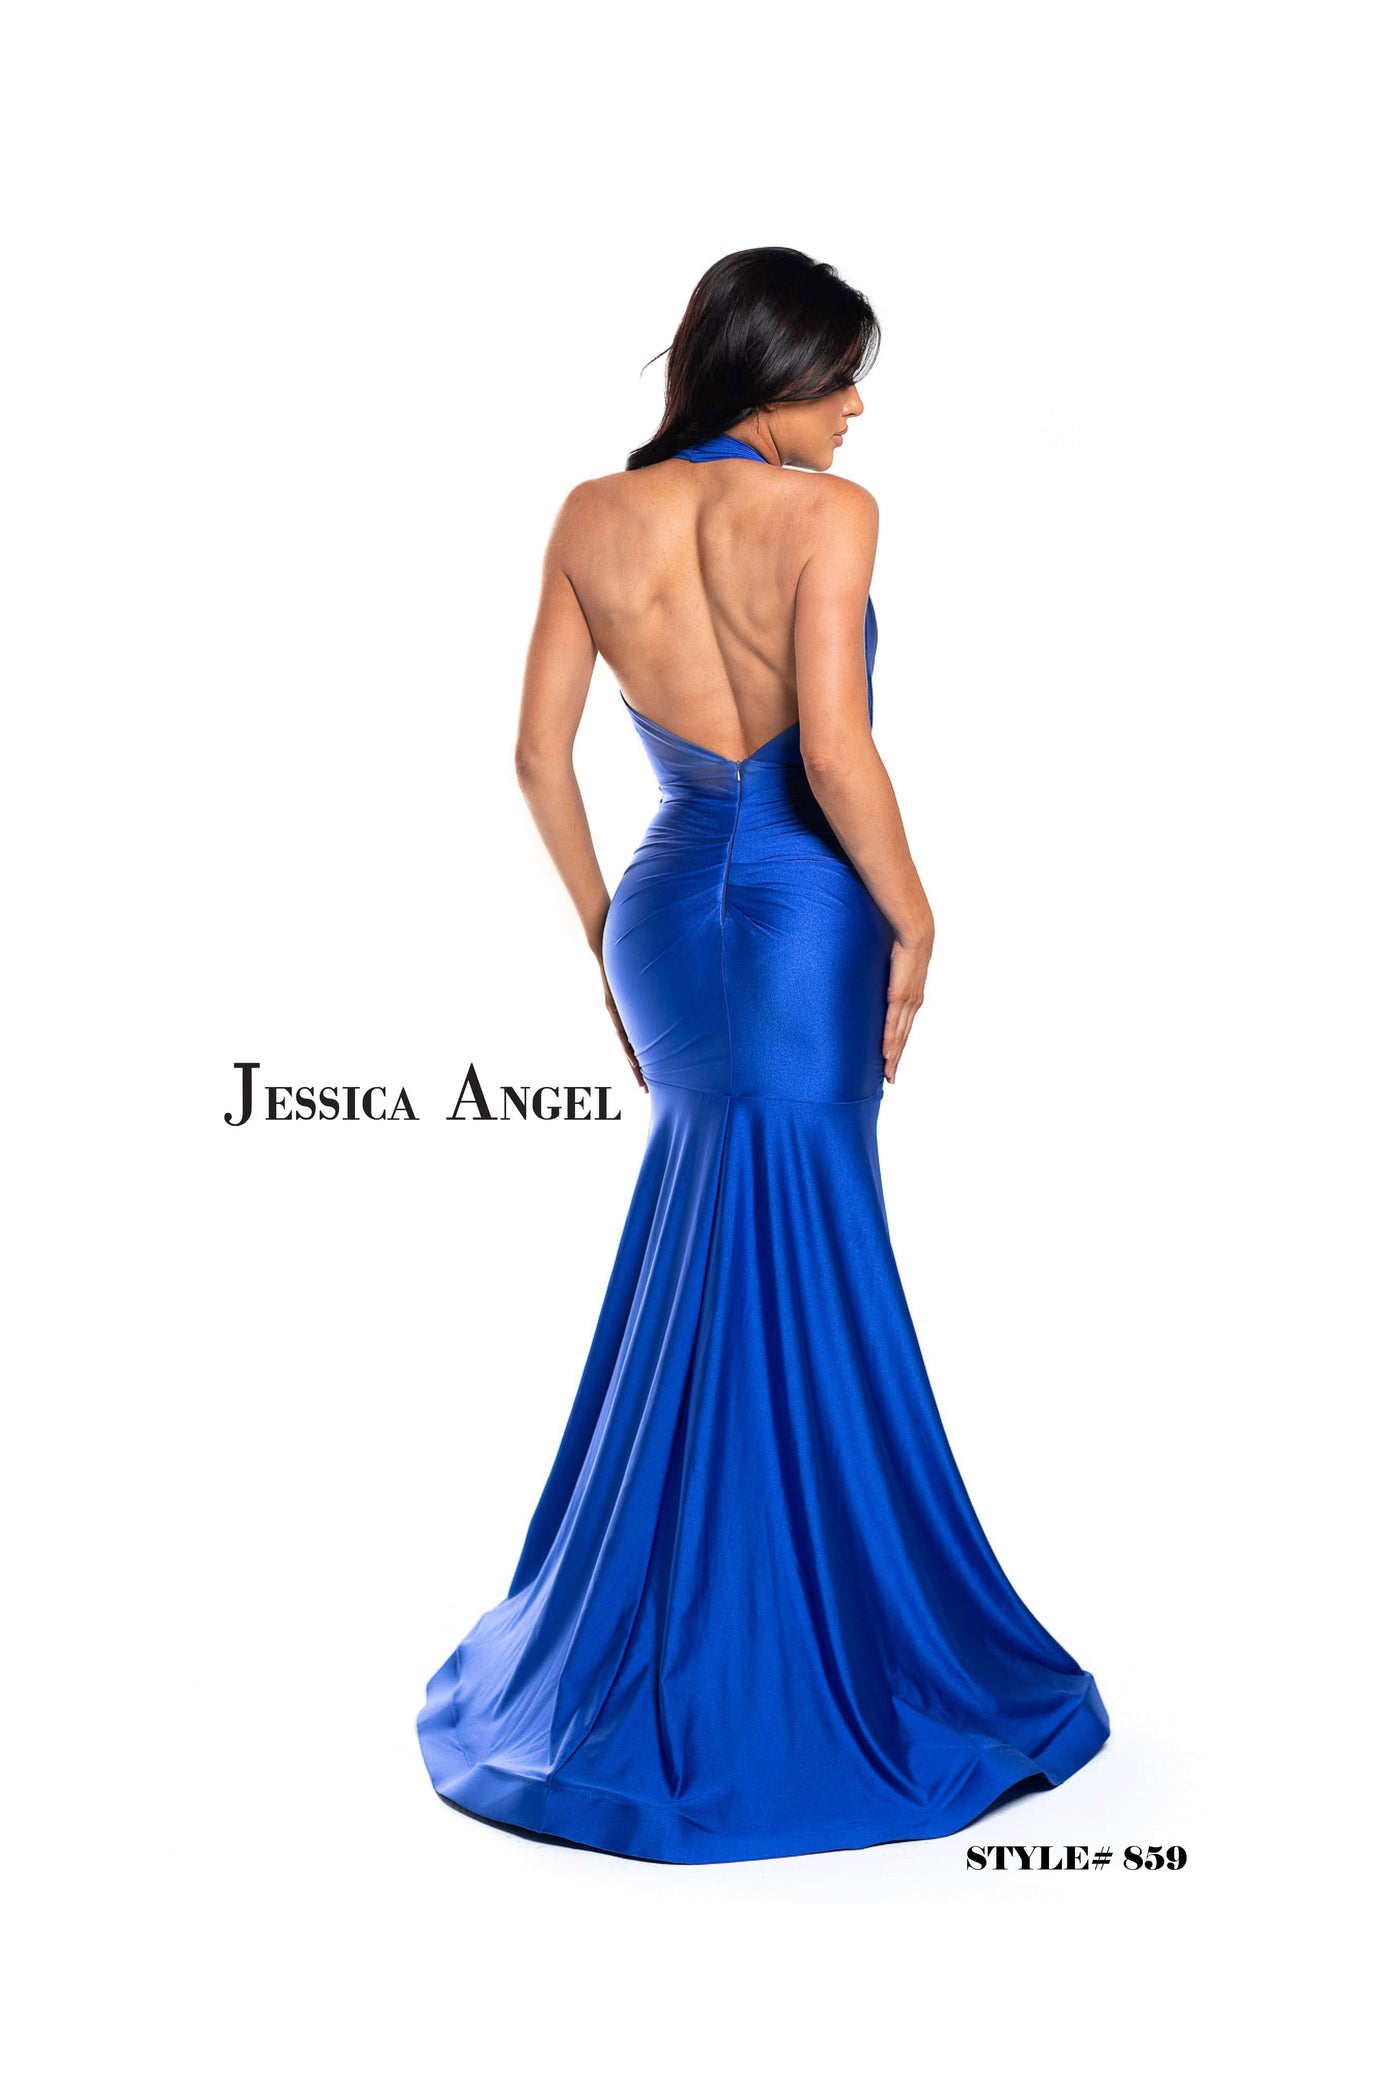 Jessica Angel 859